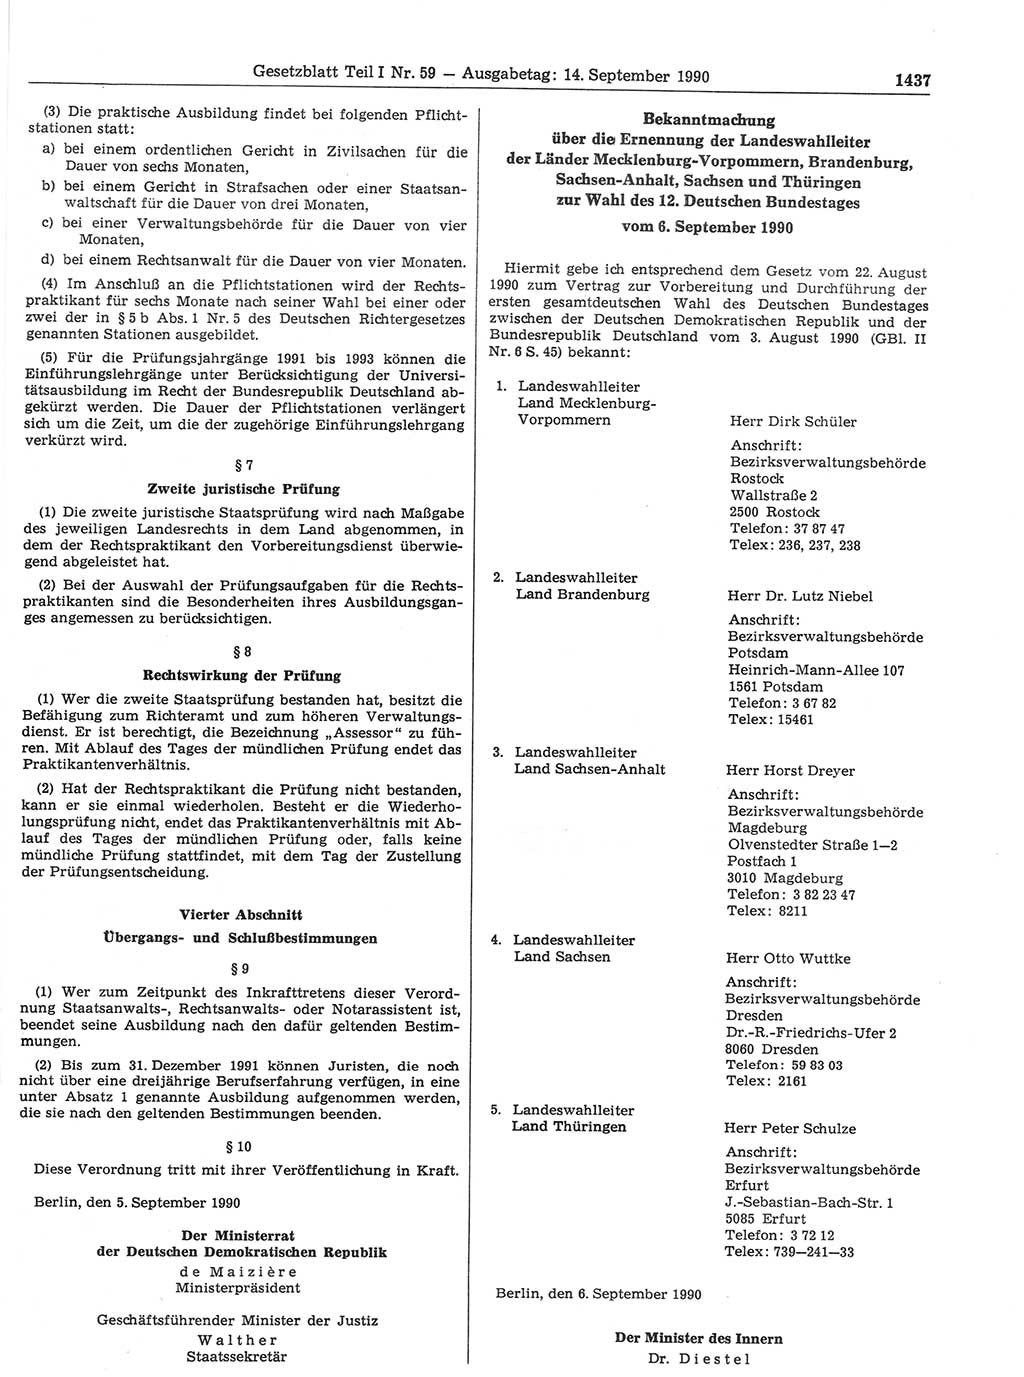 Gesetzblatt (GBl.) der Deutschen Demokratischen Republik (DDR) Teil Ⅰ 1990, Seite 1437 (GBl. DDR Ⅰ 1990, S. 1437)